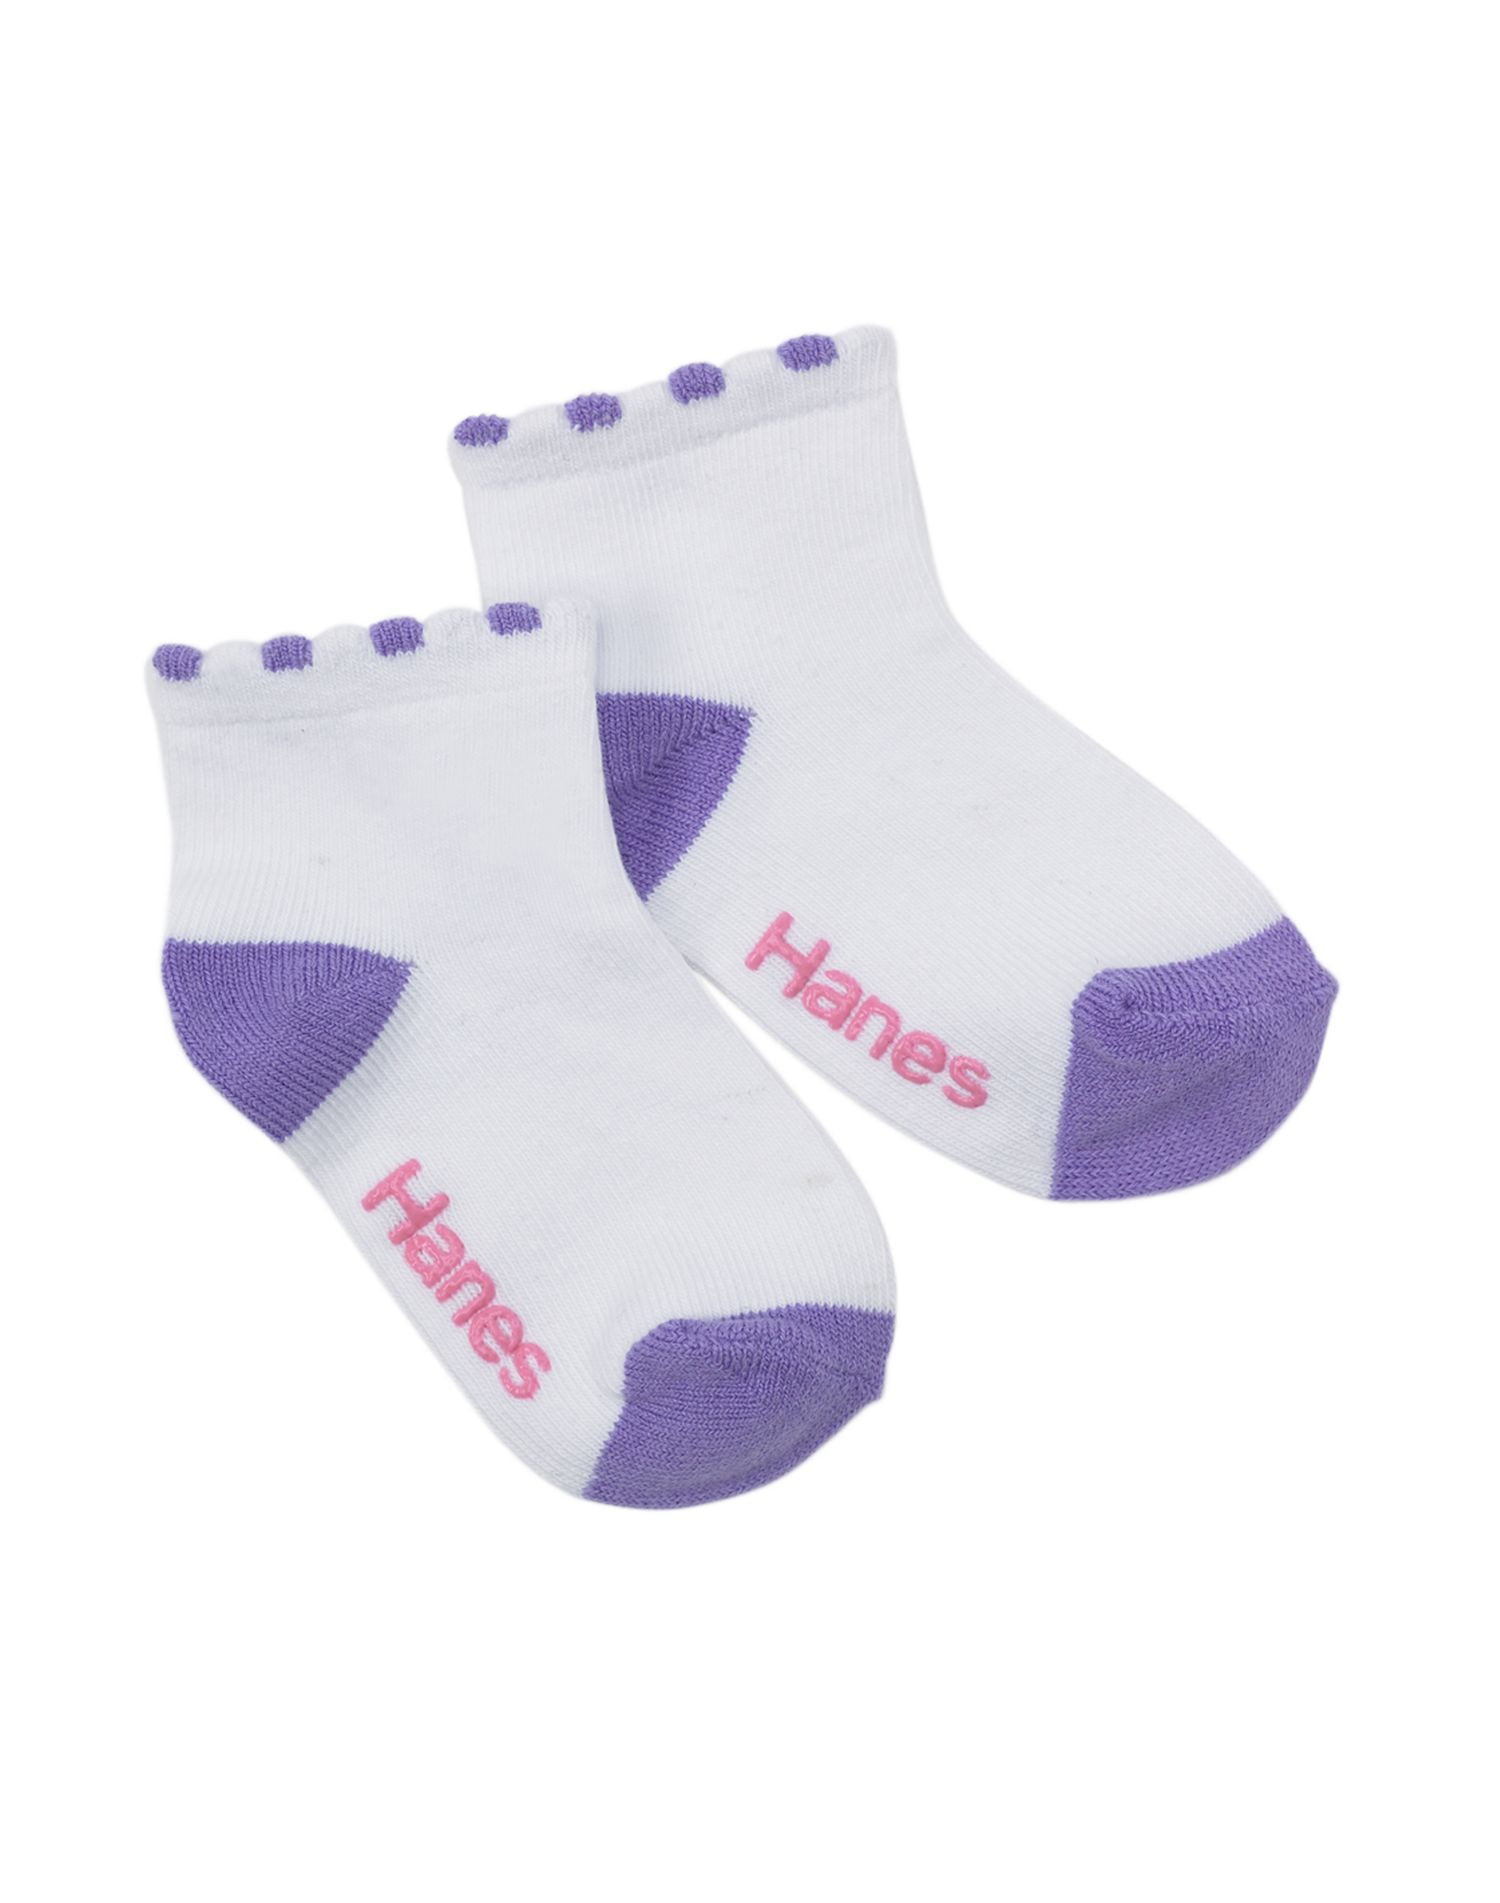 Best-Seller! Hanes Girls` Infant Toddler Ankle Socks free shipping free ...